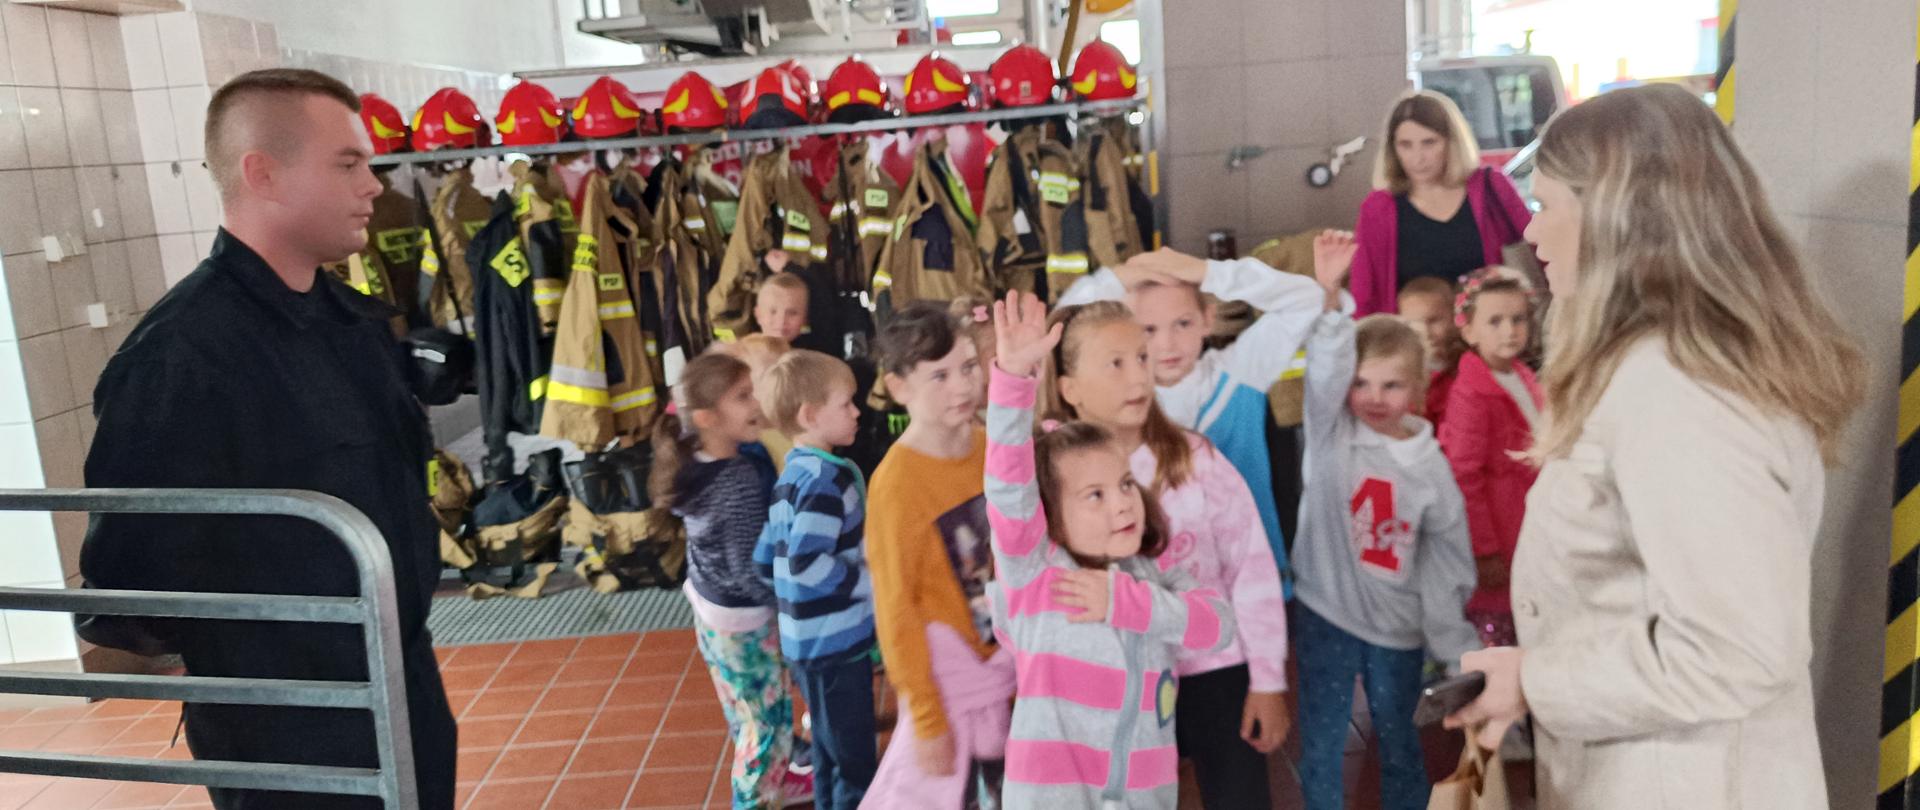 Garaż jednostki ratowniczo-gaśniczej, grupa dzieci wraz z opiekunkami w czasie pogadanki na temat służby w Państwowej Straży Pożarnej prowadzonej przez strażaka.